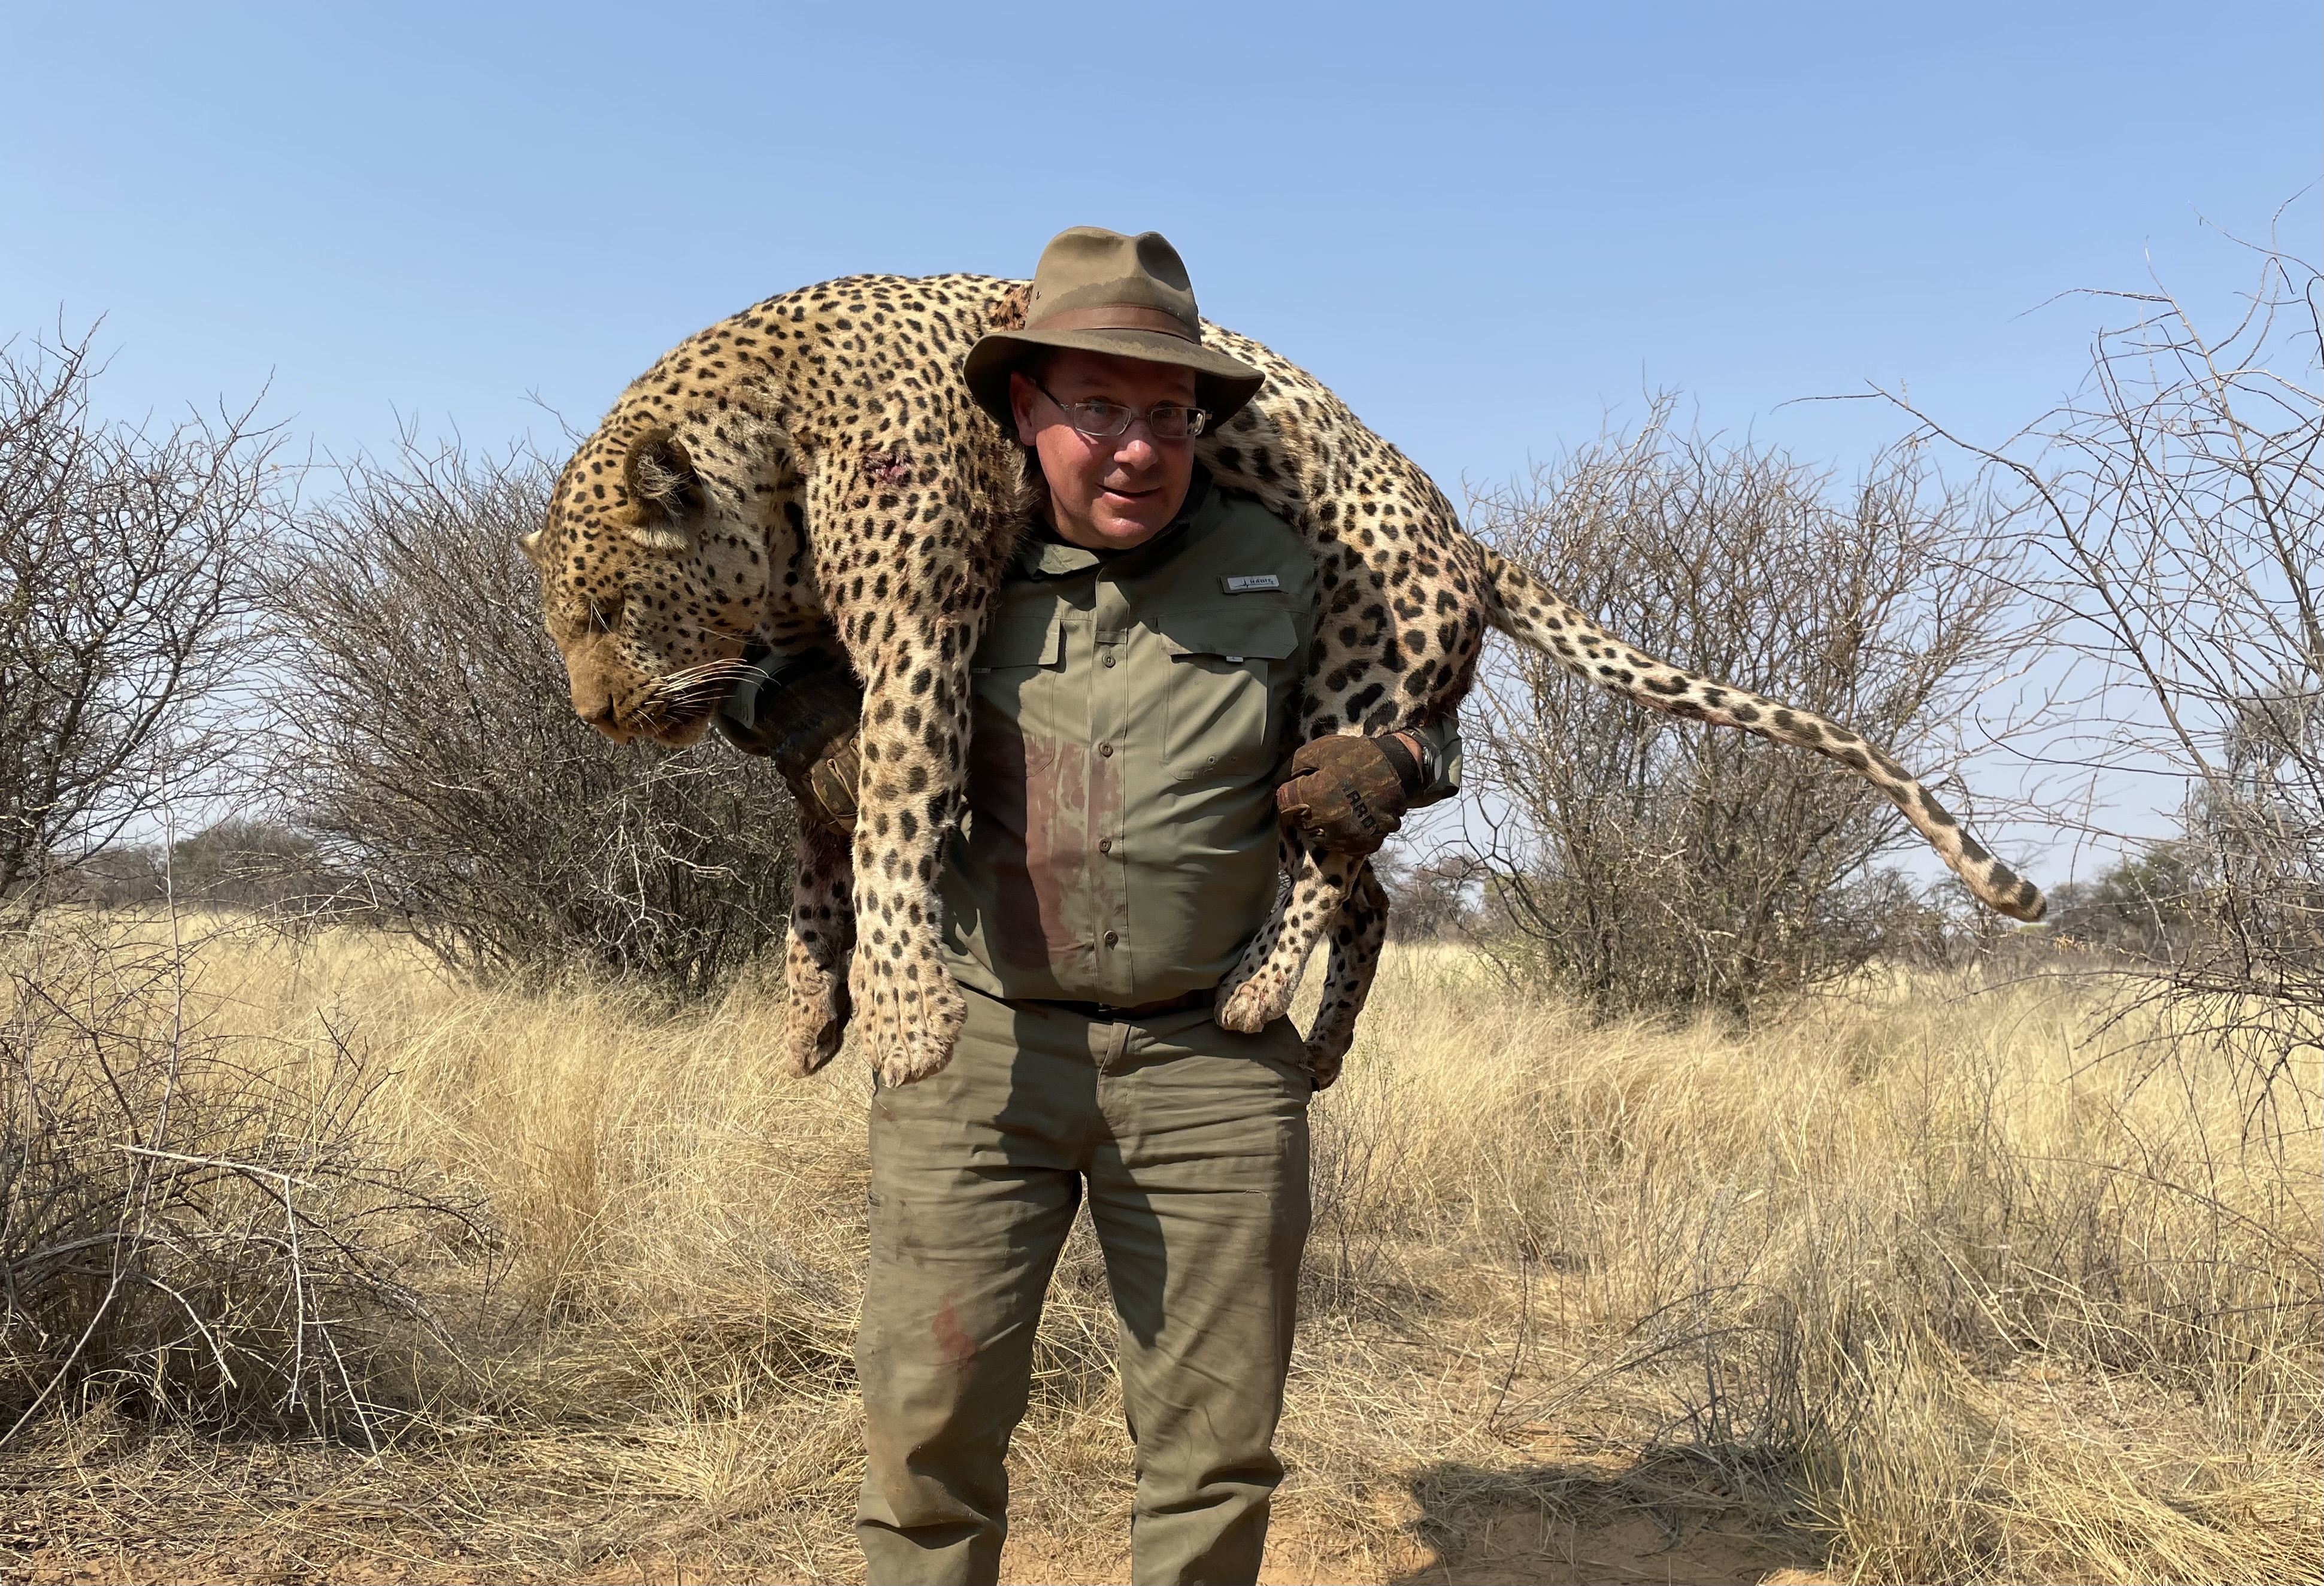 Tom with Leopard Carry 9.23 Botswana.jpg